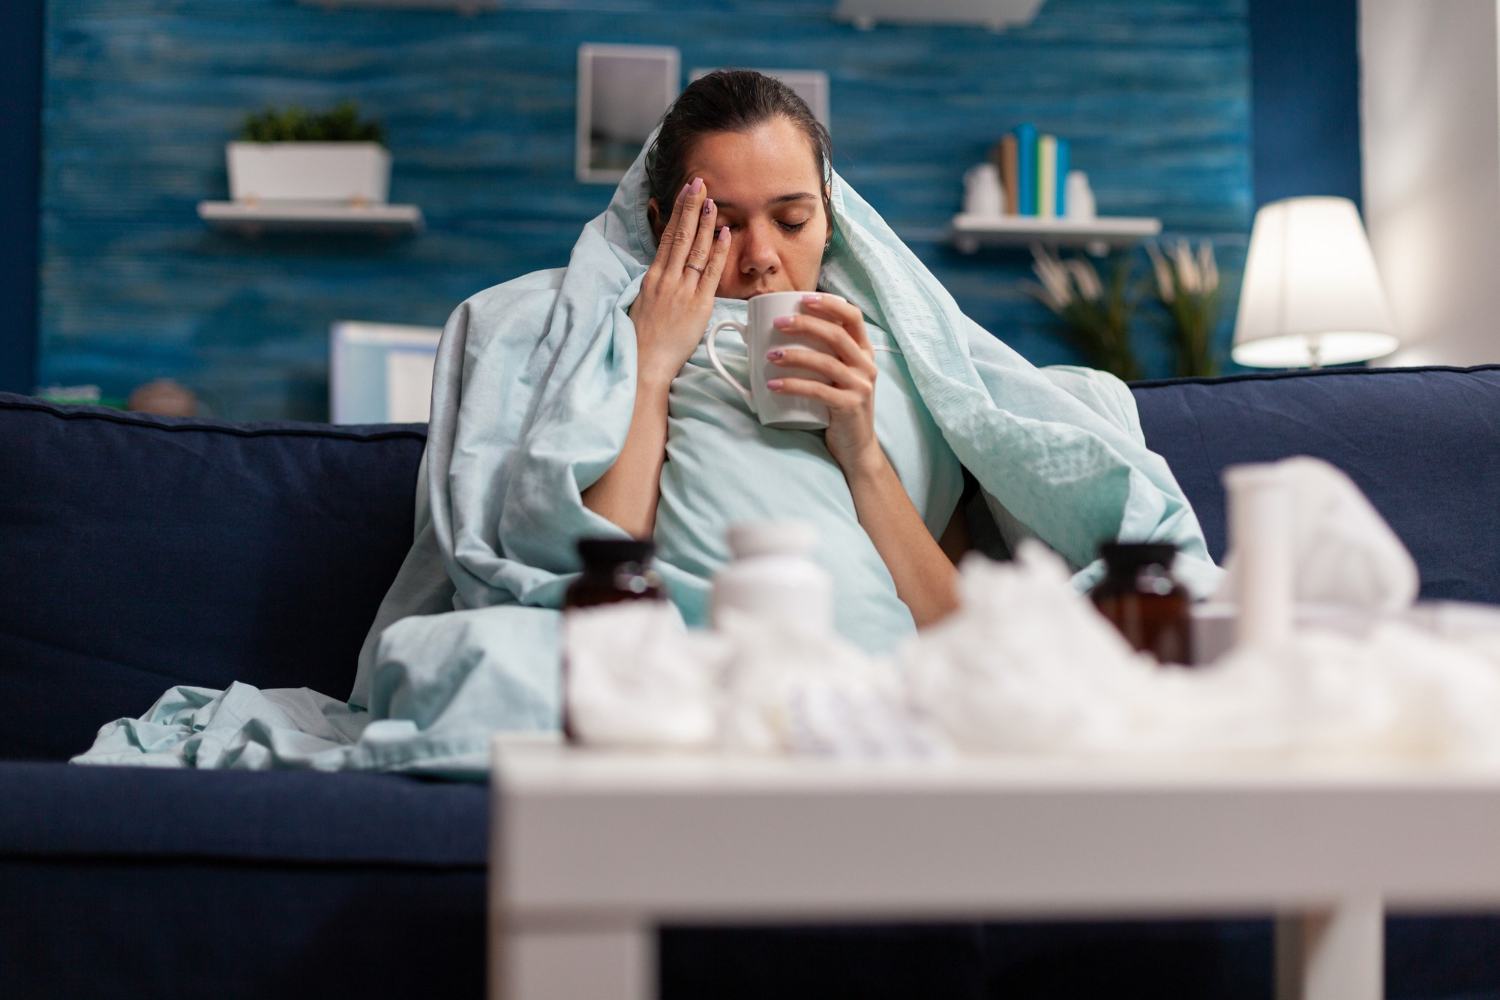 Κρυολόγημα ή γρίπη; Δες πώς μπορείς να ξεχωρίσεις τα συμπτώματα και πότε να ανησυχήσεις